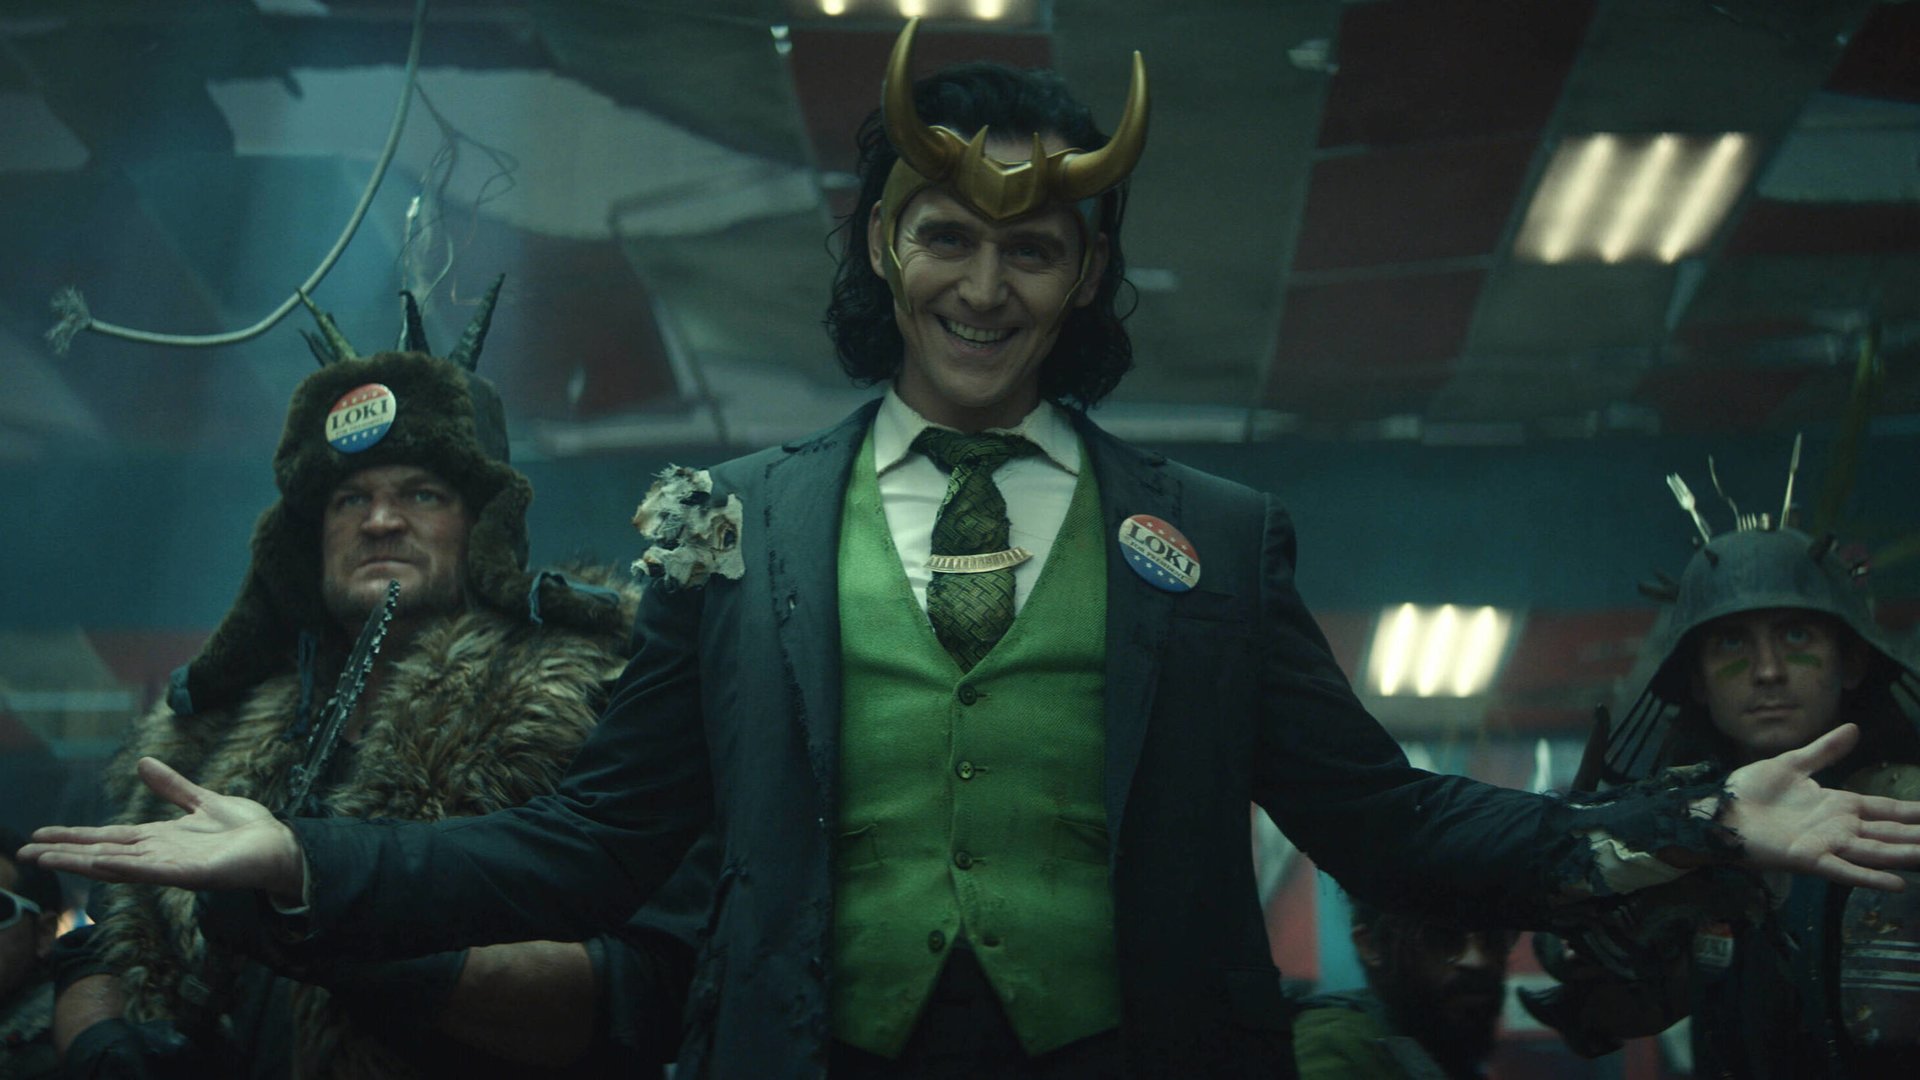 #„Loki“ wird zur großen Marvel-Hoffnung: Neue Staffel bricht jetzt schon MCU- und Disney+-Rekord